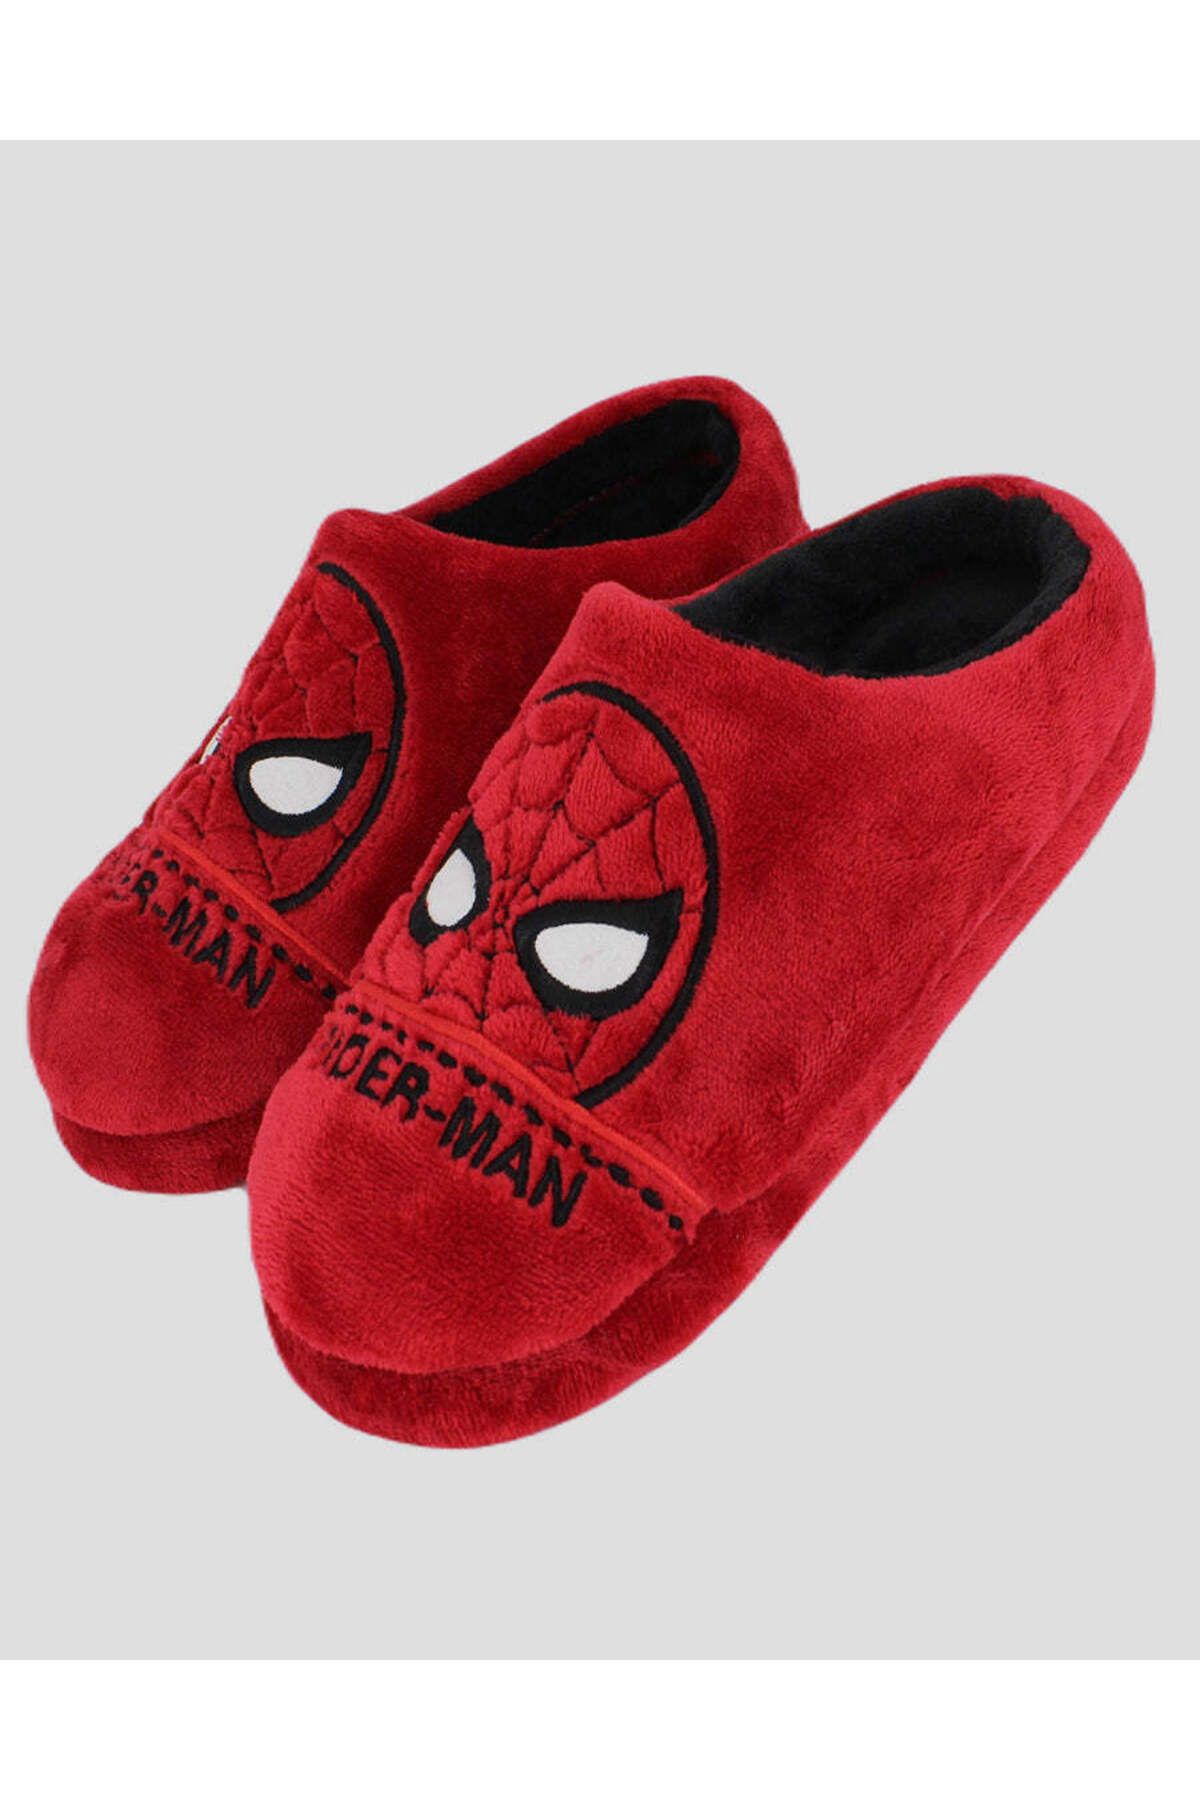 Chirpy Spıderman - Spiderman Şekilli Kırmızı Erkek Ev Terliği